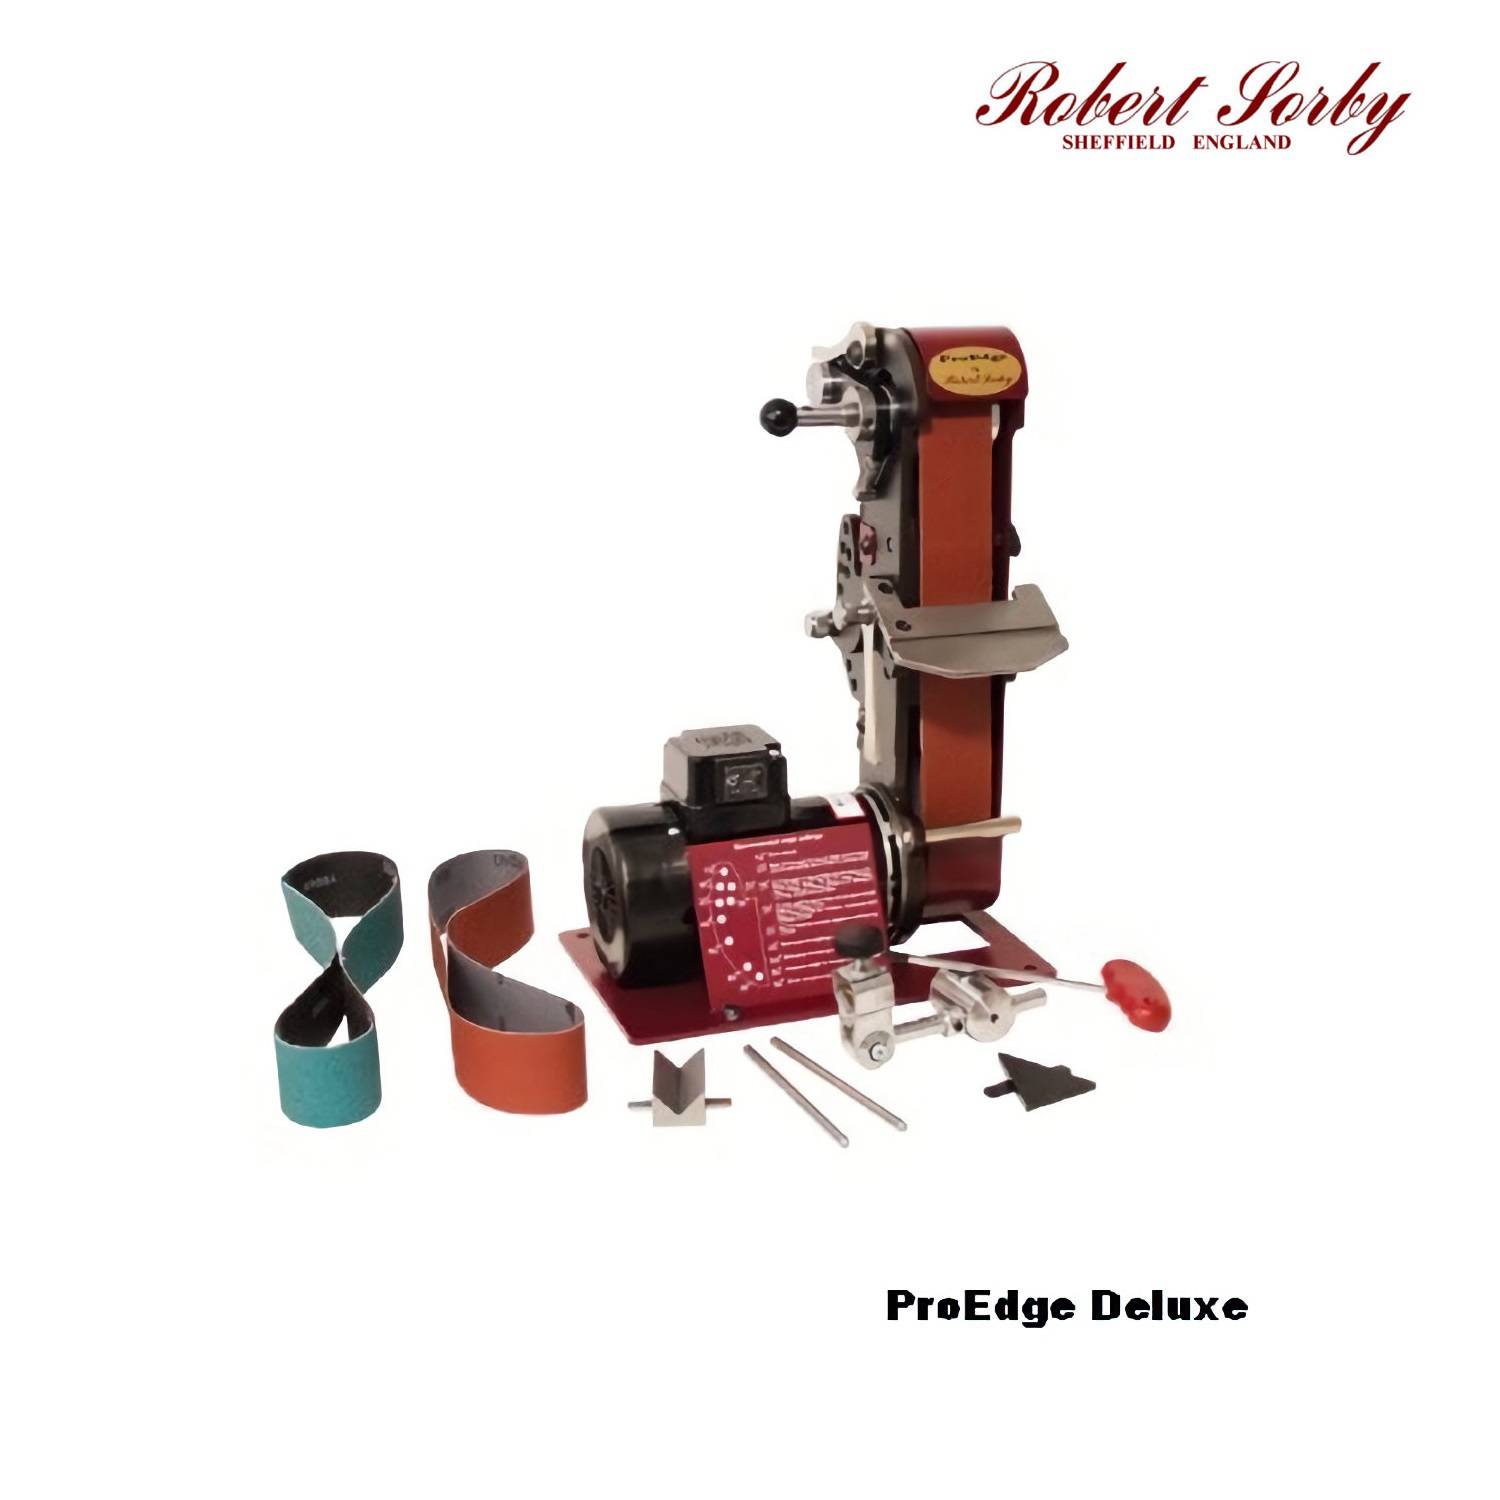 ProEdge-Deluxe-Robert-Sorby